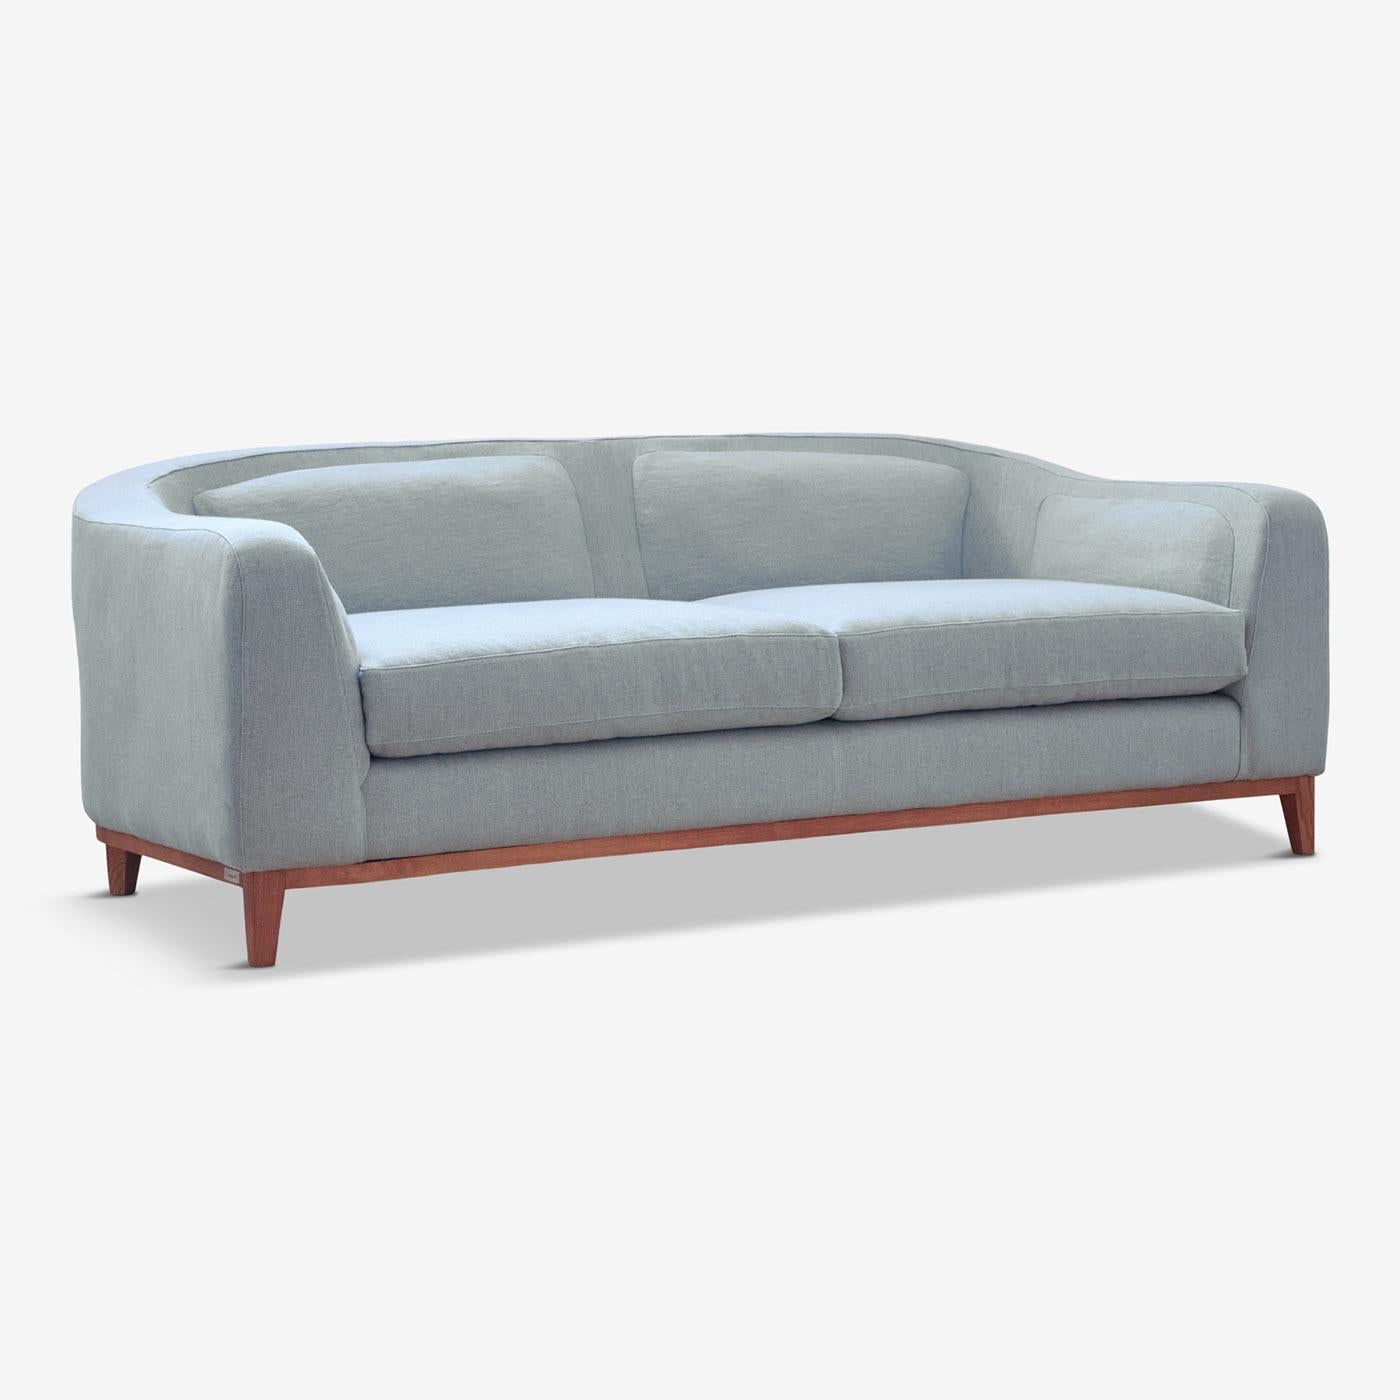 AM Contemporary und kompakt, dieses verspielte Sofa von Brian Sironi bringt Stil in jeden Raum. Die Beine und das gesamte Gestell sind aus massivem Buchenholz gefertigt. Sitzfläche und Rückenlehne sind mit praktischen Plüschkissen ausgestattet, die